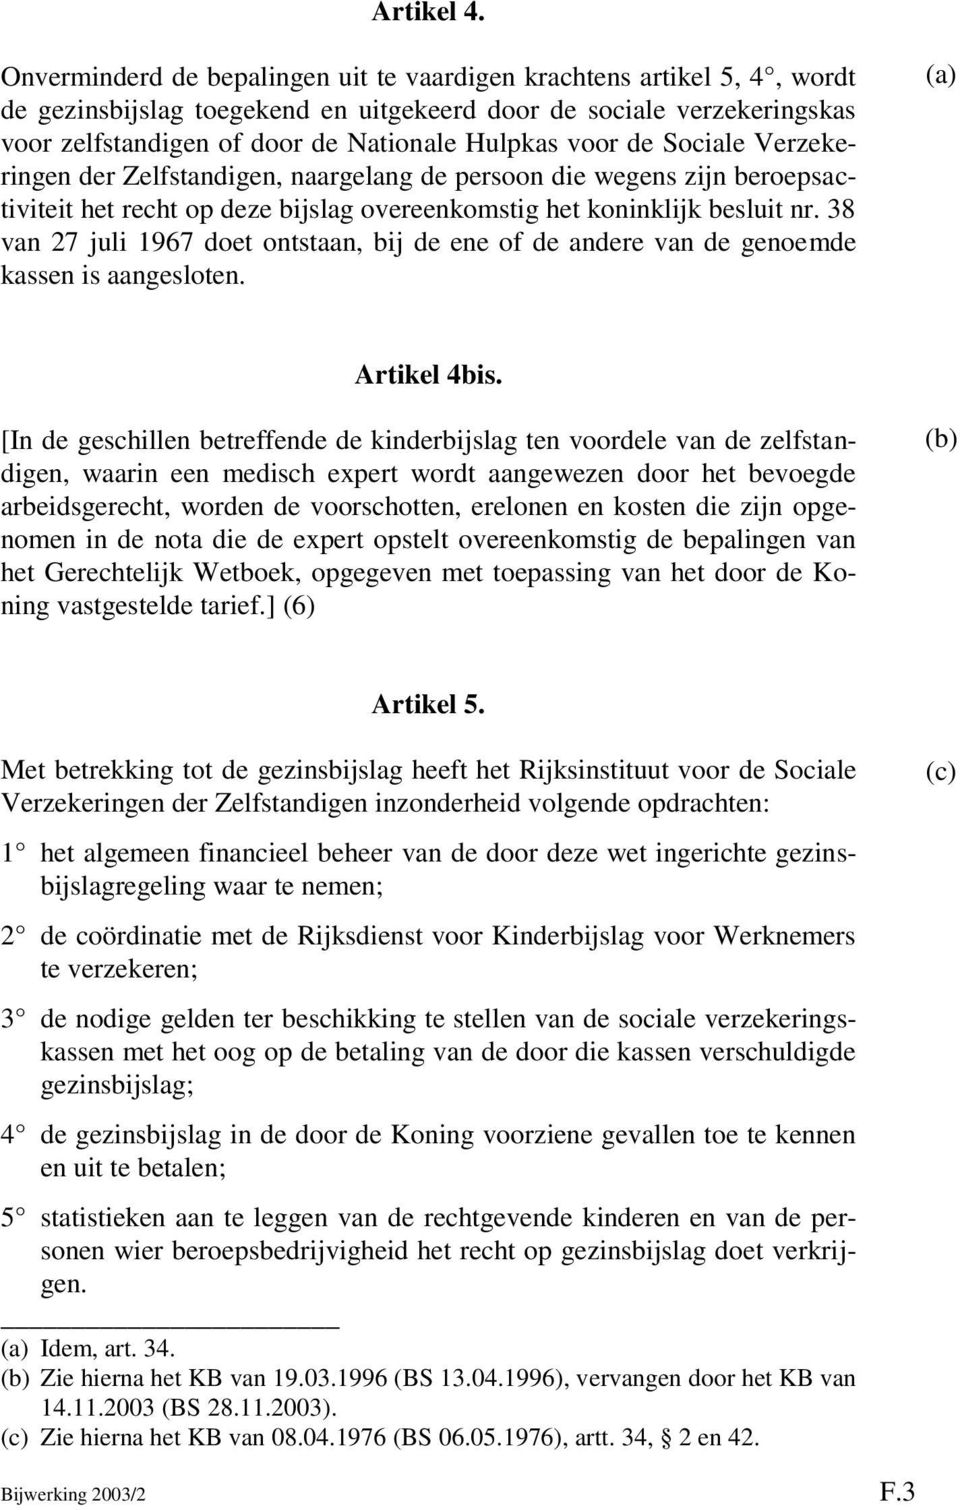 de Sociale Verzekeringen der Zelfstandigen, naargelang de persoon die wegens zijn beroepsactiviteit het recht op deze bijslag overeenkomstig het koninklijk besluit nr.